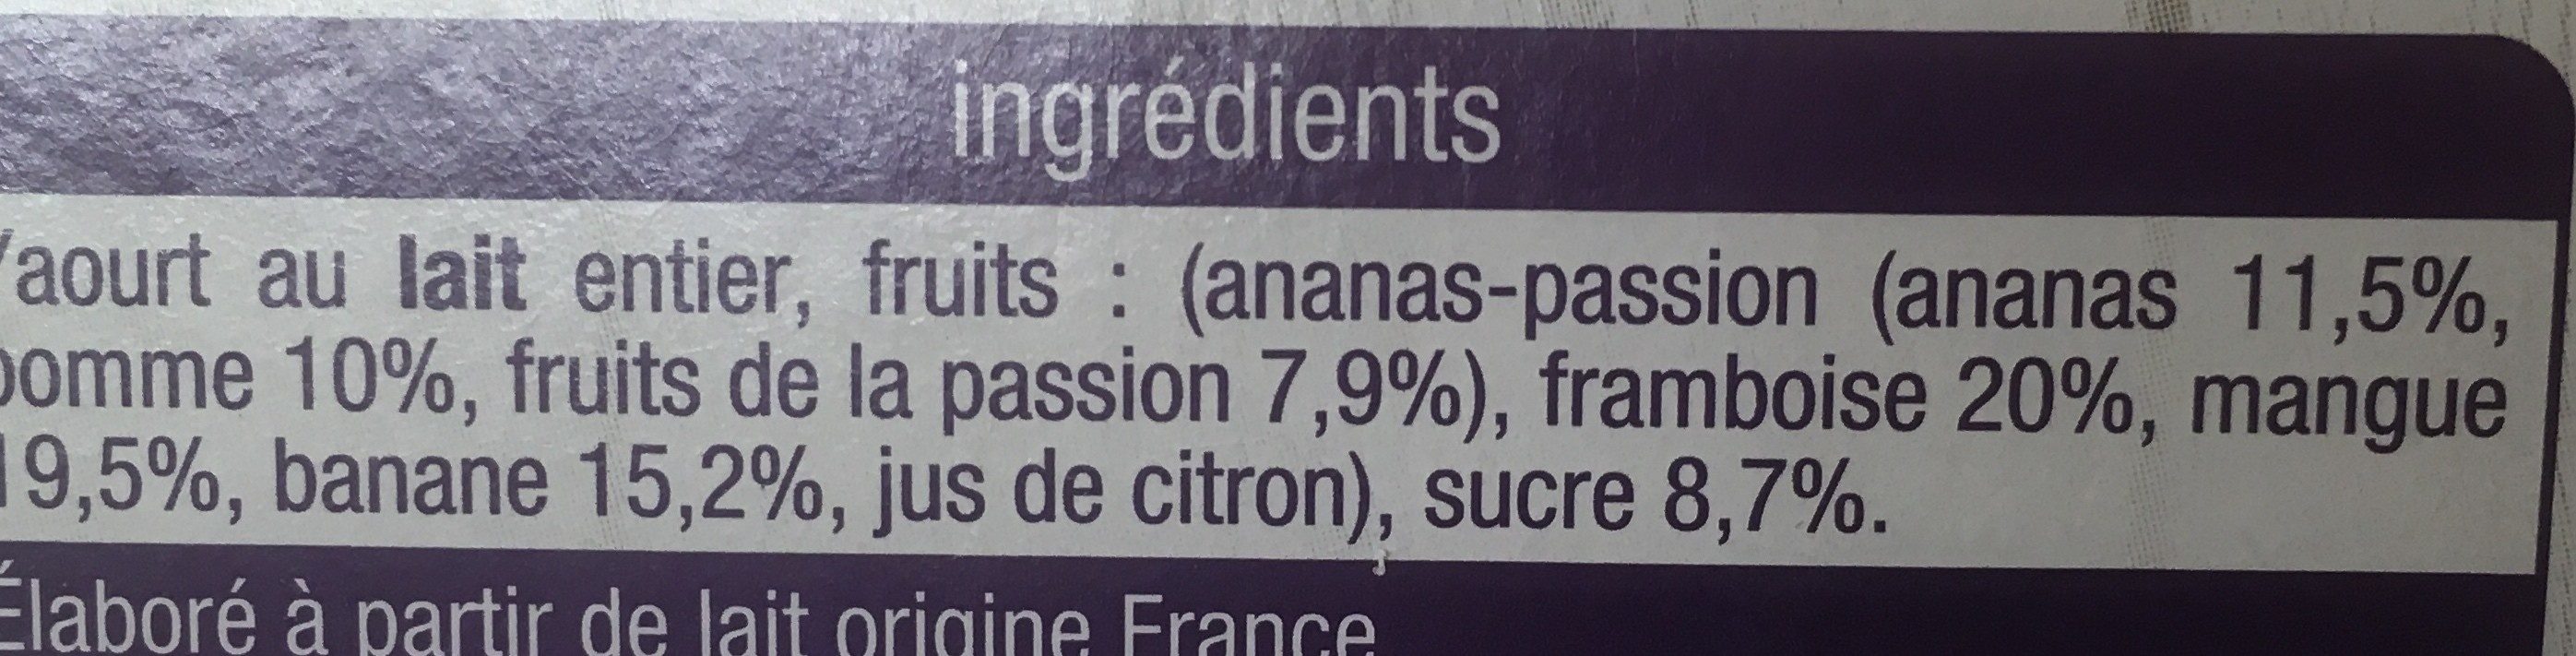 Yaourts 4 saveurs - Ingredients - fr